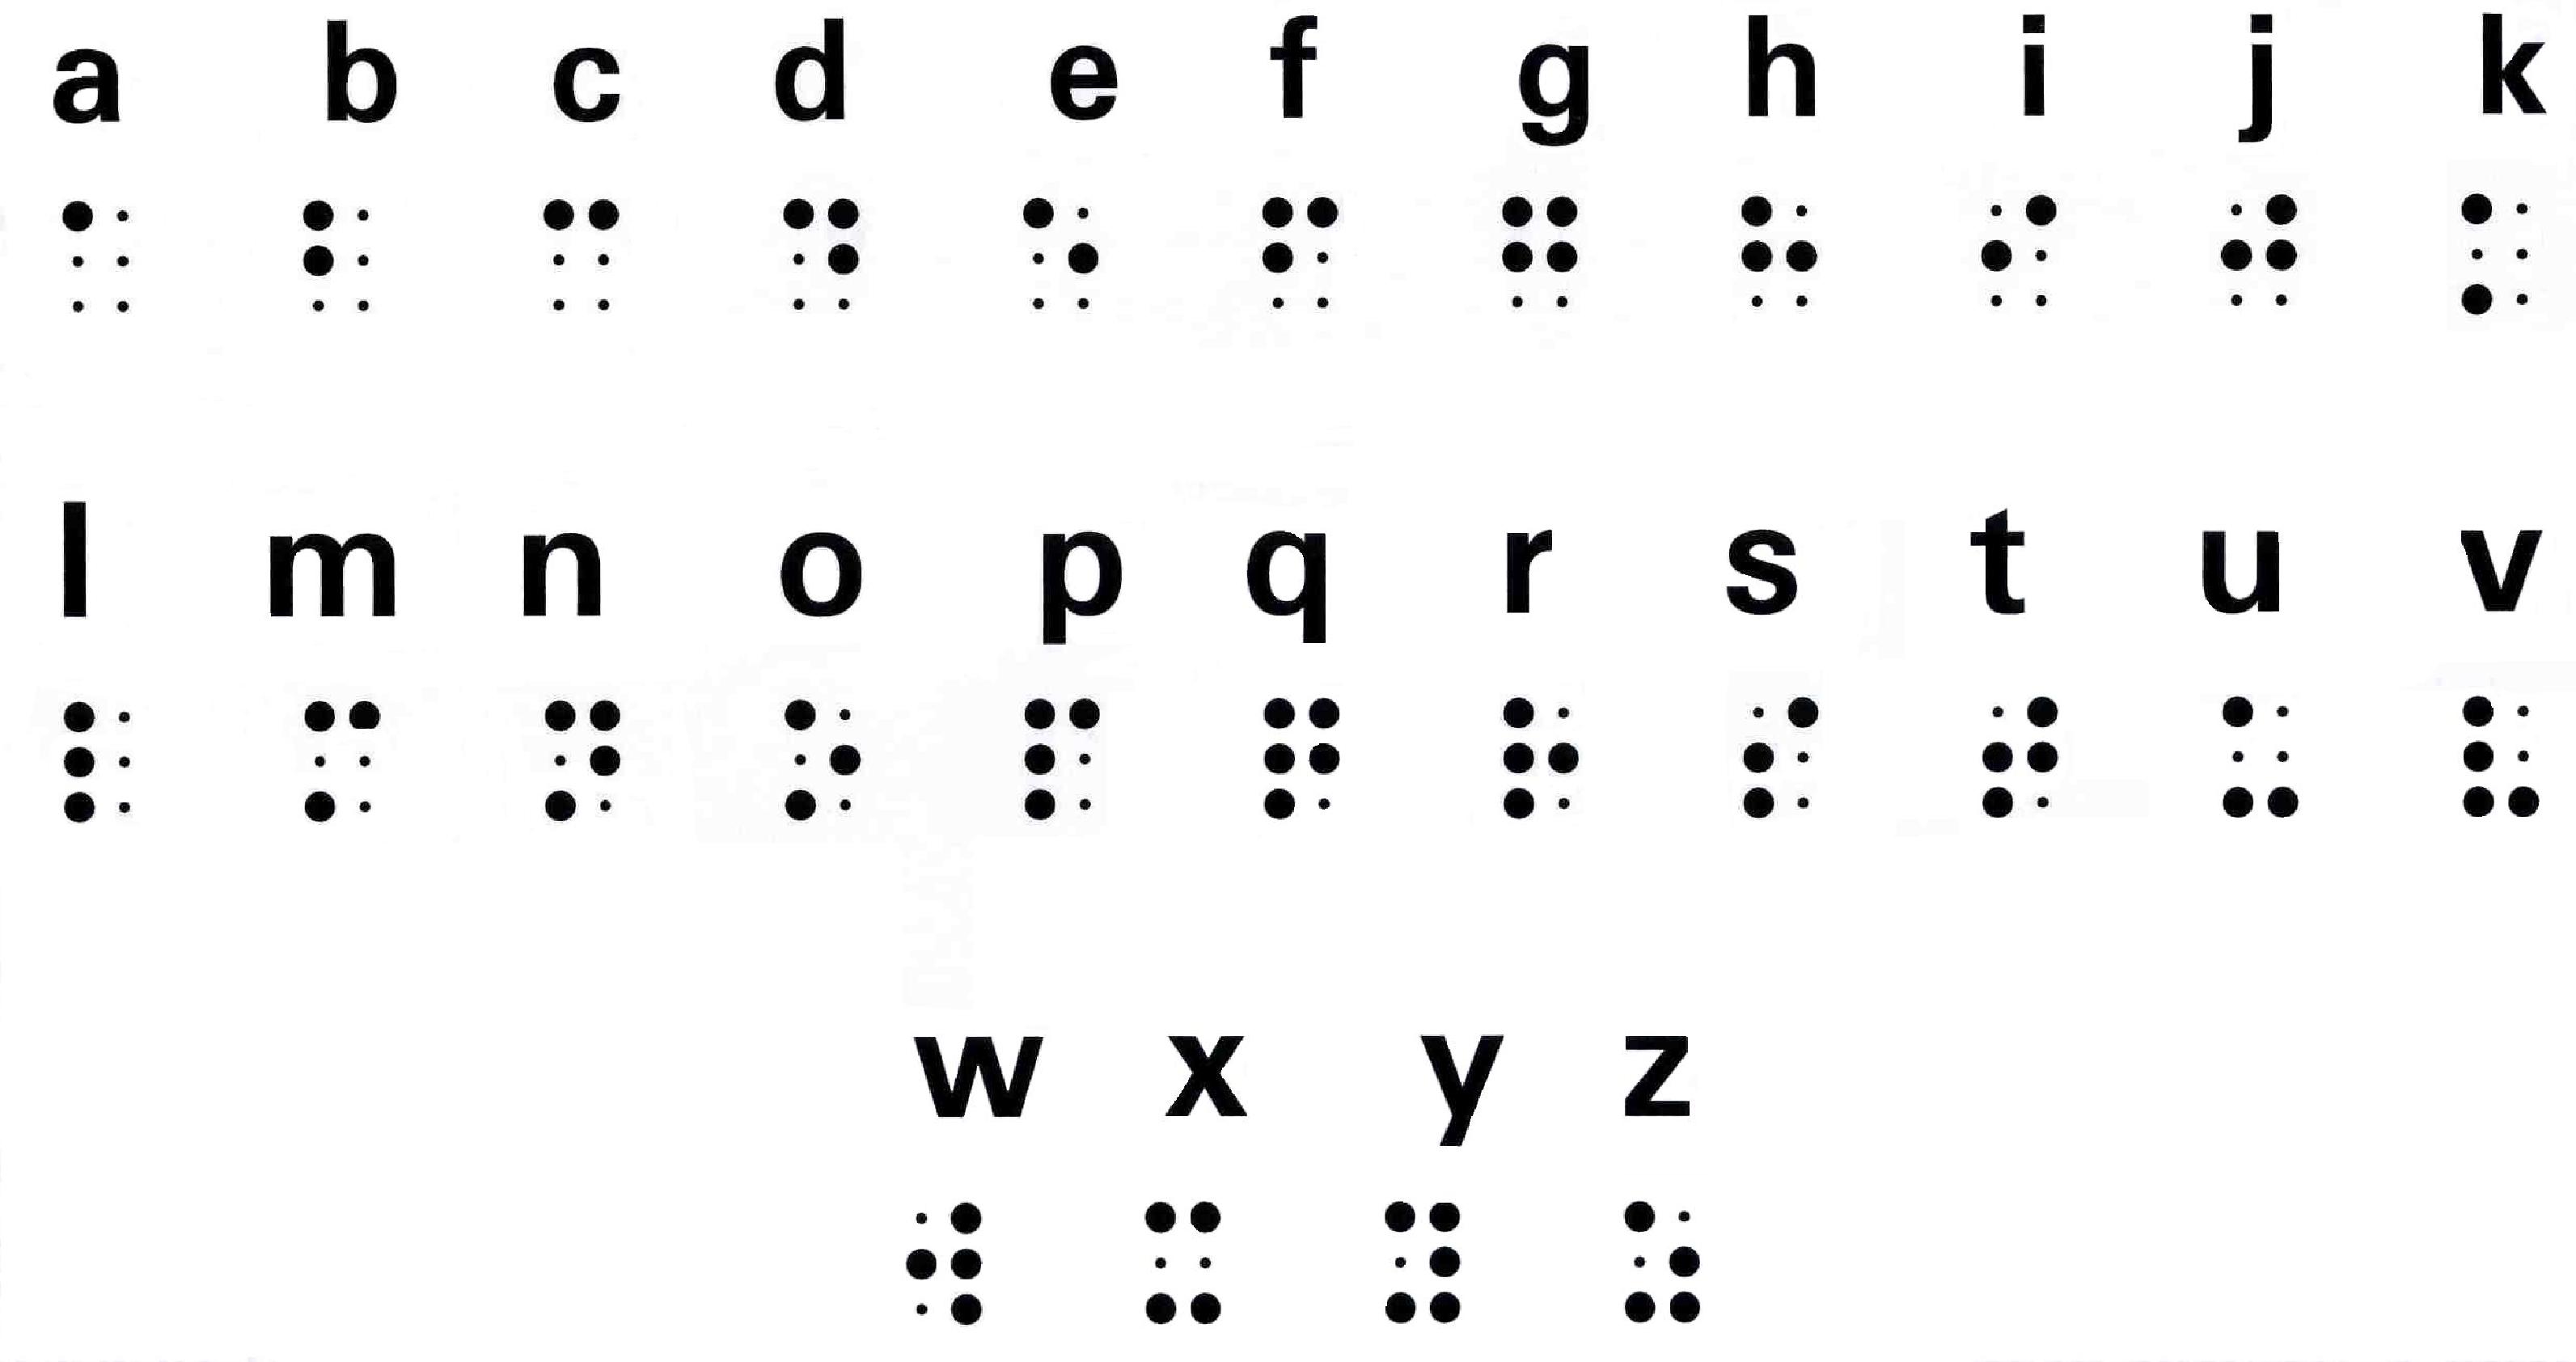 Dibujo del alfabeto Braille.